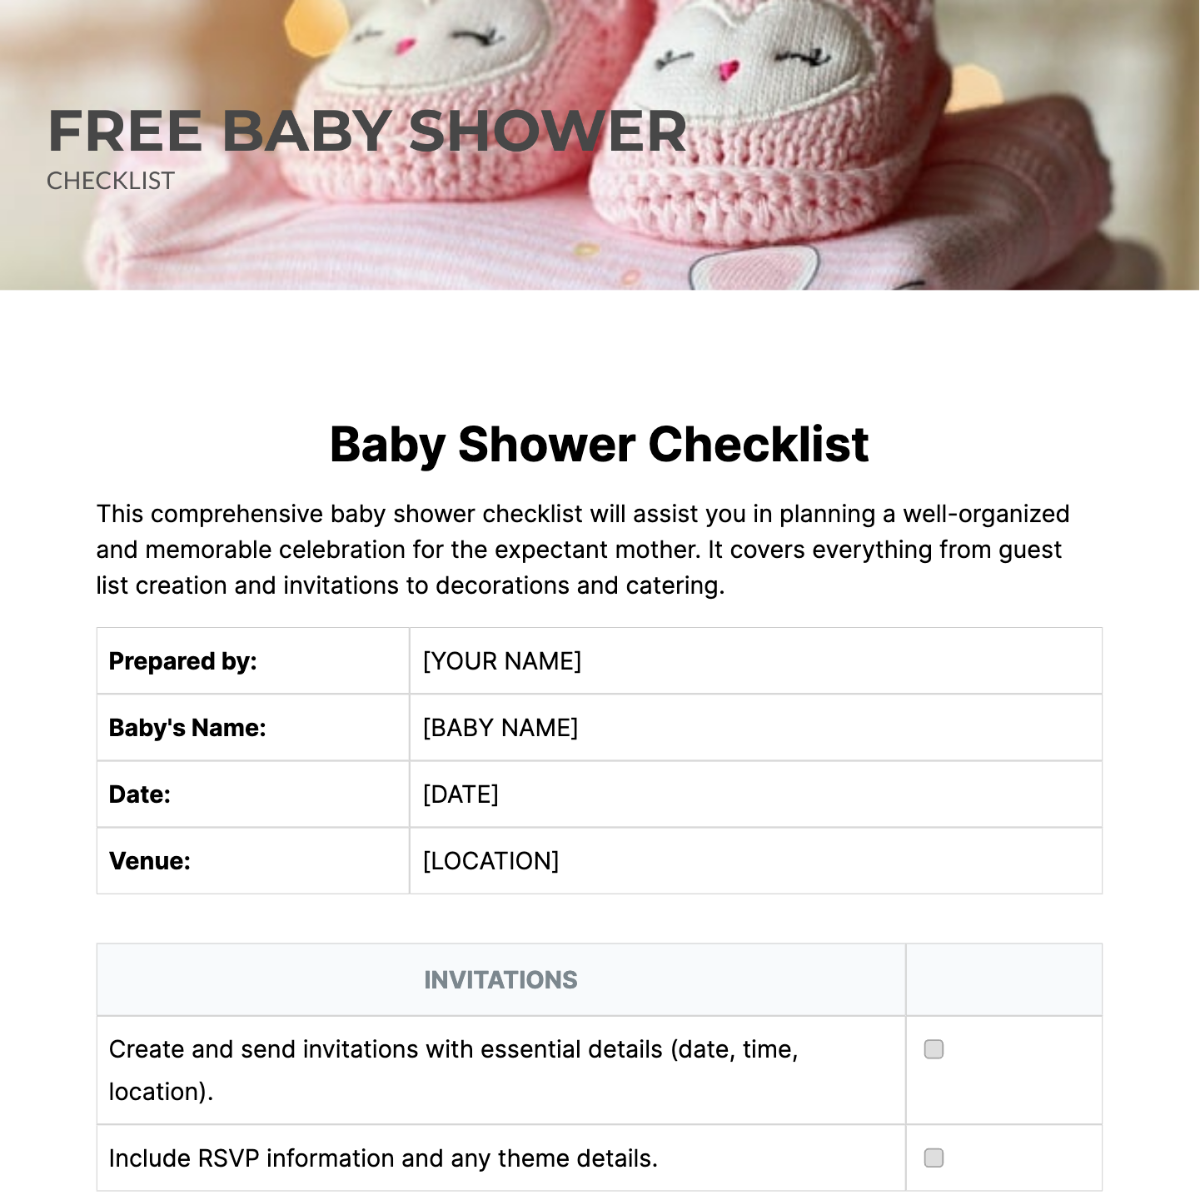 Baby Shower Checklist Template